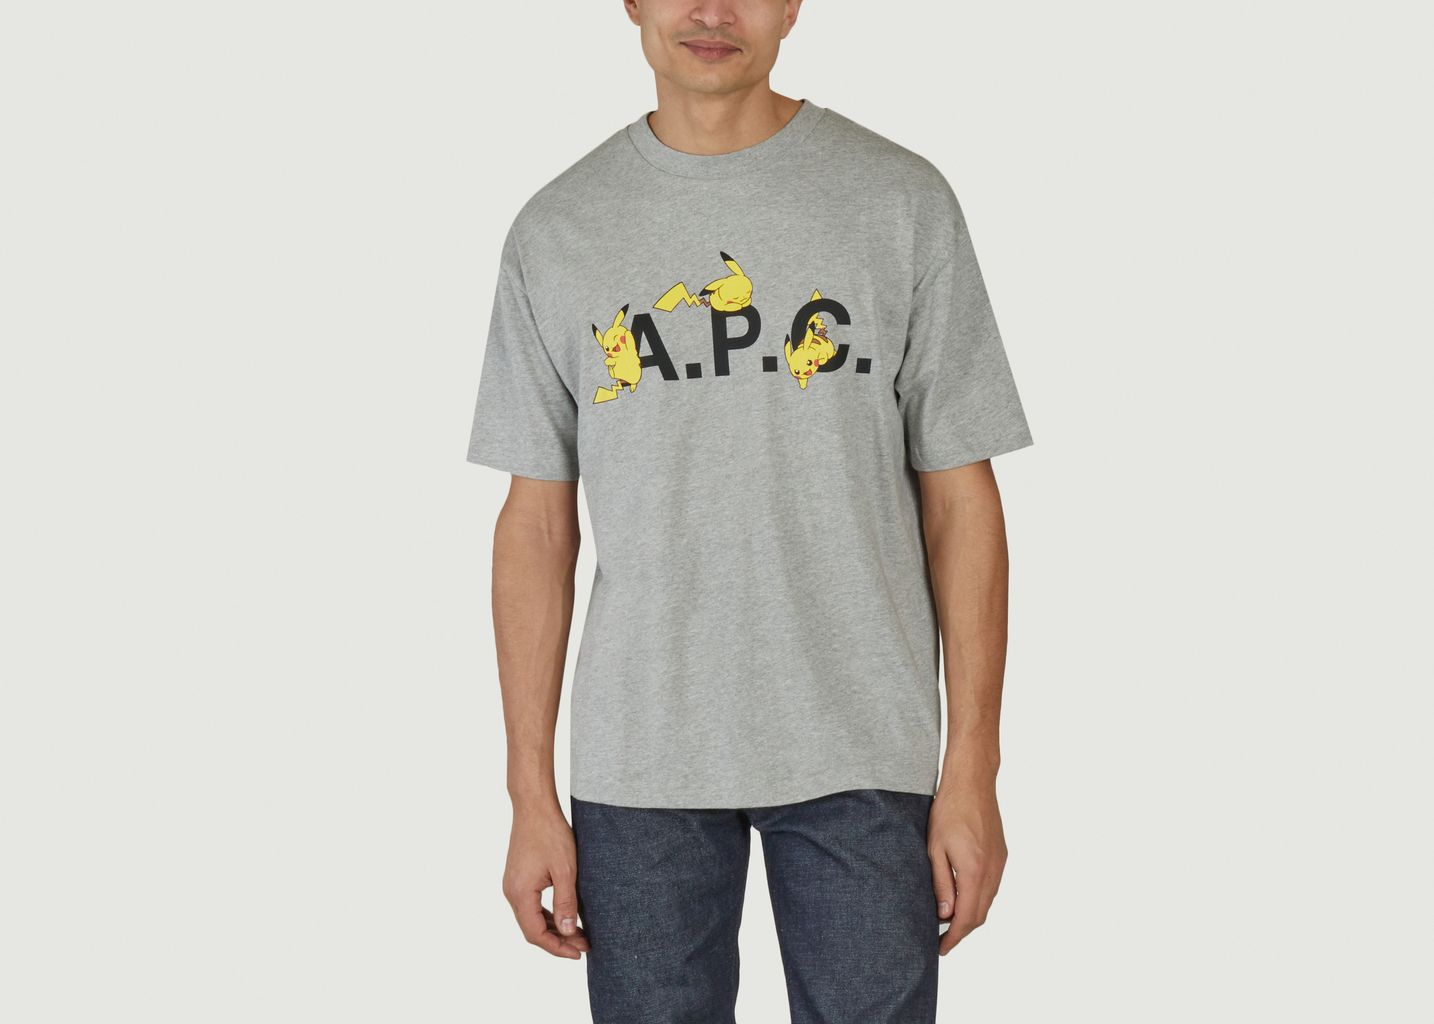 Pikachu printed T-shirt Pokémon x A.P.C. - A.P.C.